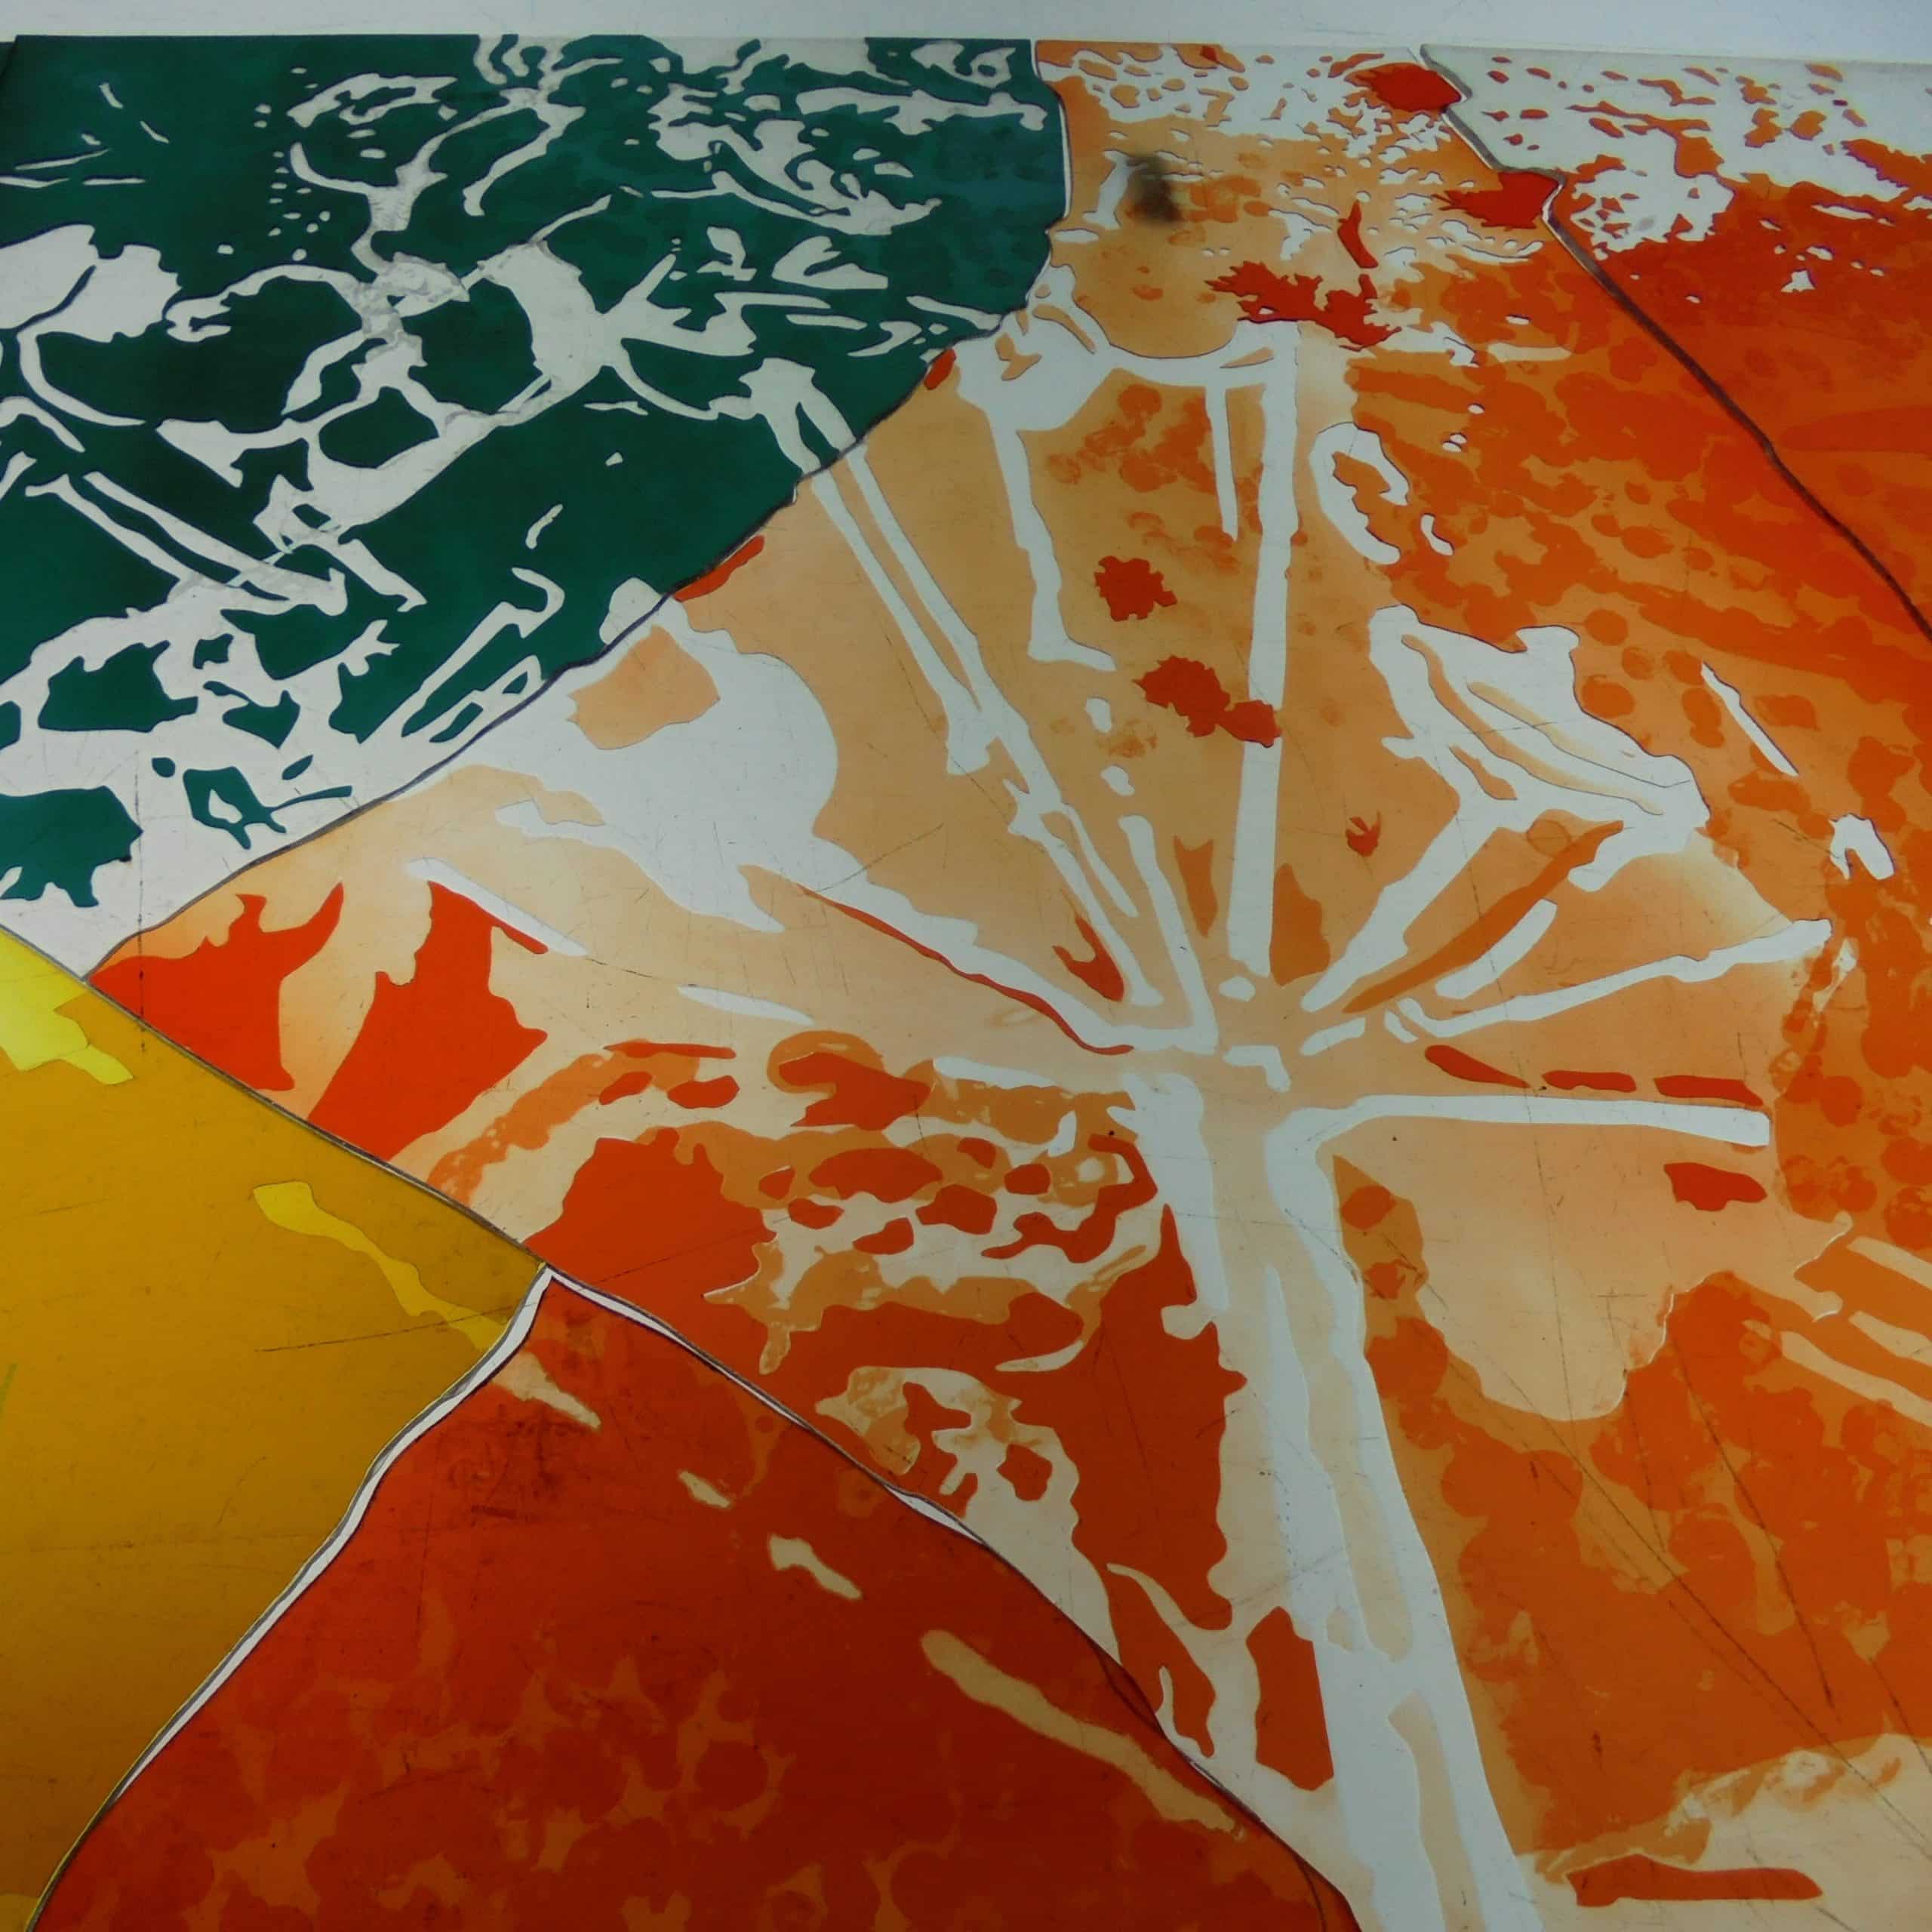 Buntes Buntglasfenster mit abstraktem Design in Orange, Gelb und Grün, Detailansicht, ohne sichtbare Umgebung.